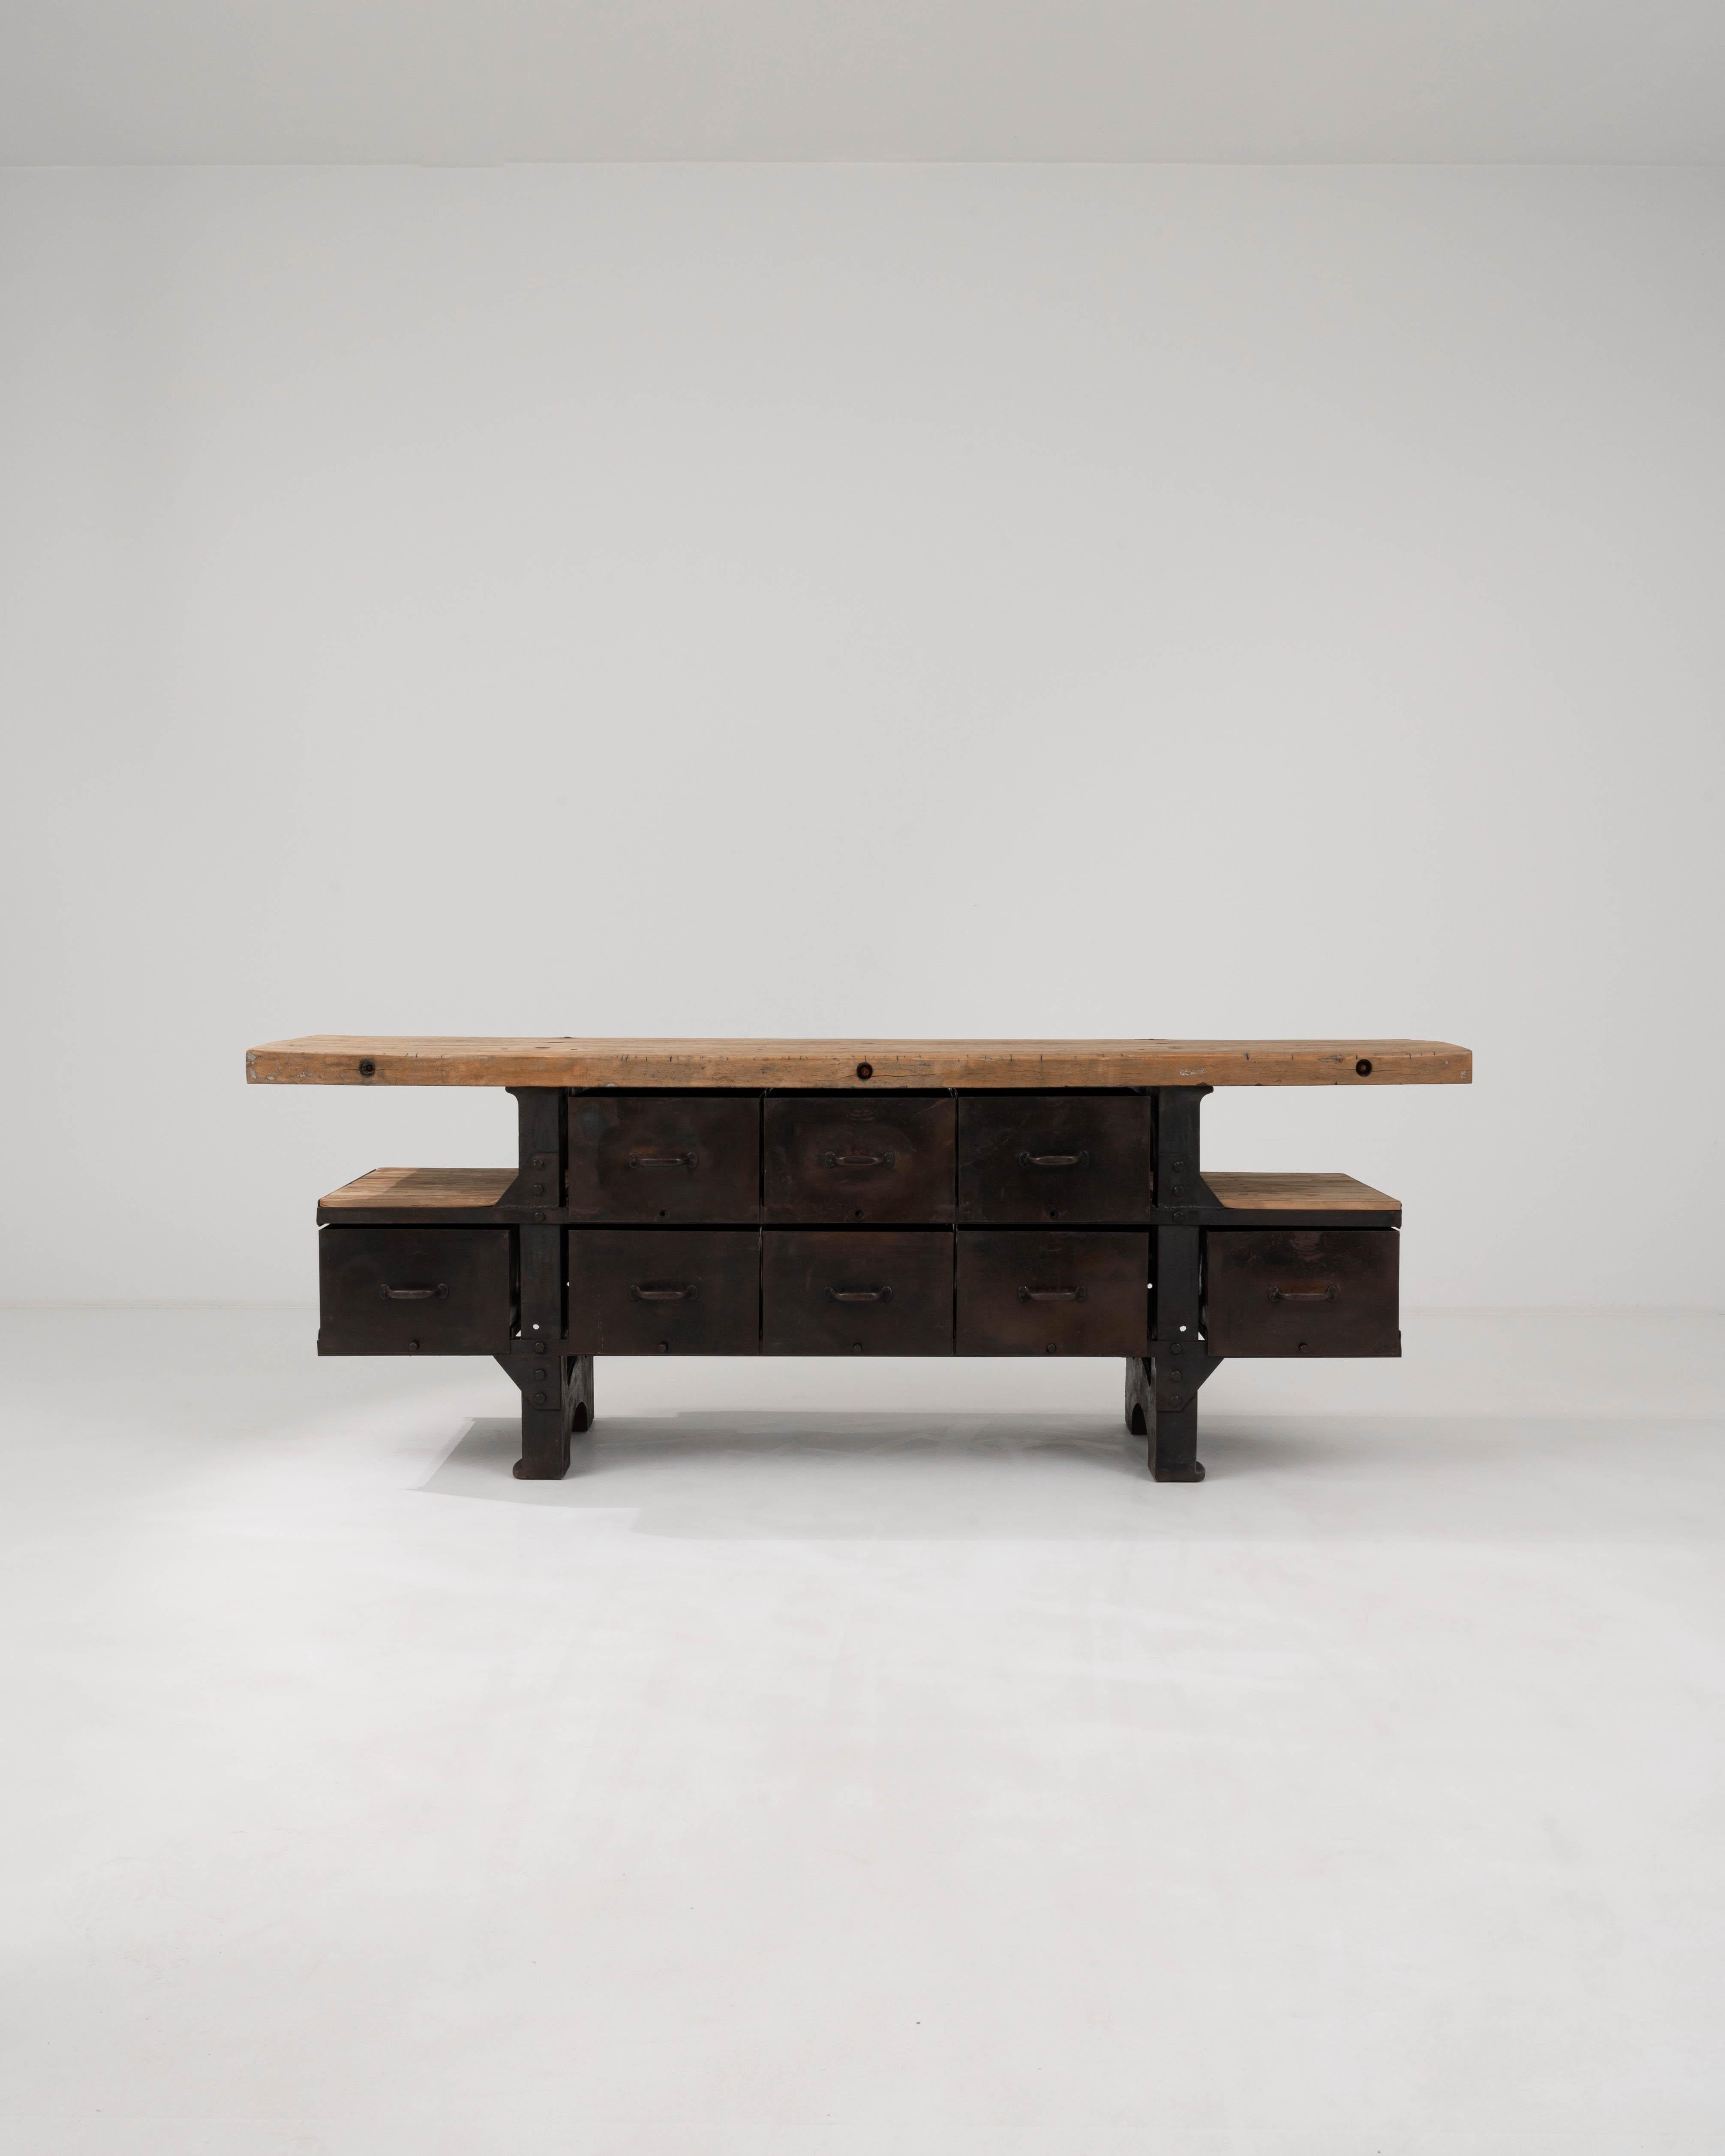 Cette table industrielle belge du 20e siècle est un ajout robuste à tout espace qui apprécie l'esthétique brute et non raffinée du design industriel. Le plateau de la table en bois, usé par le temps et l'usage, porte les marques et les histoires